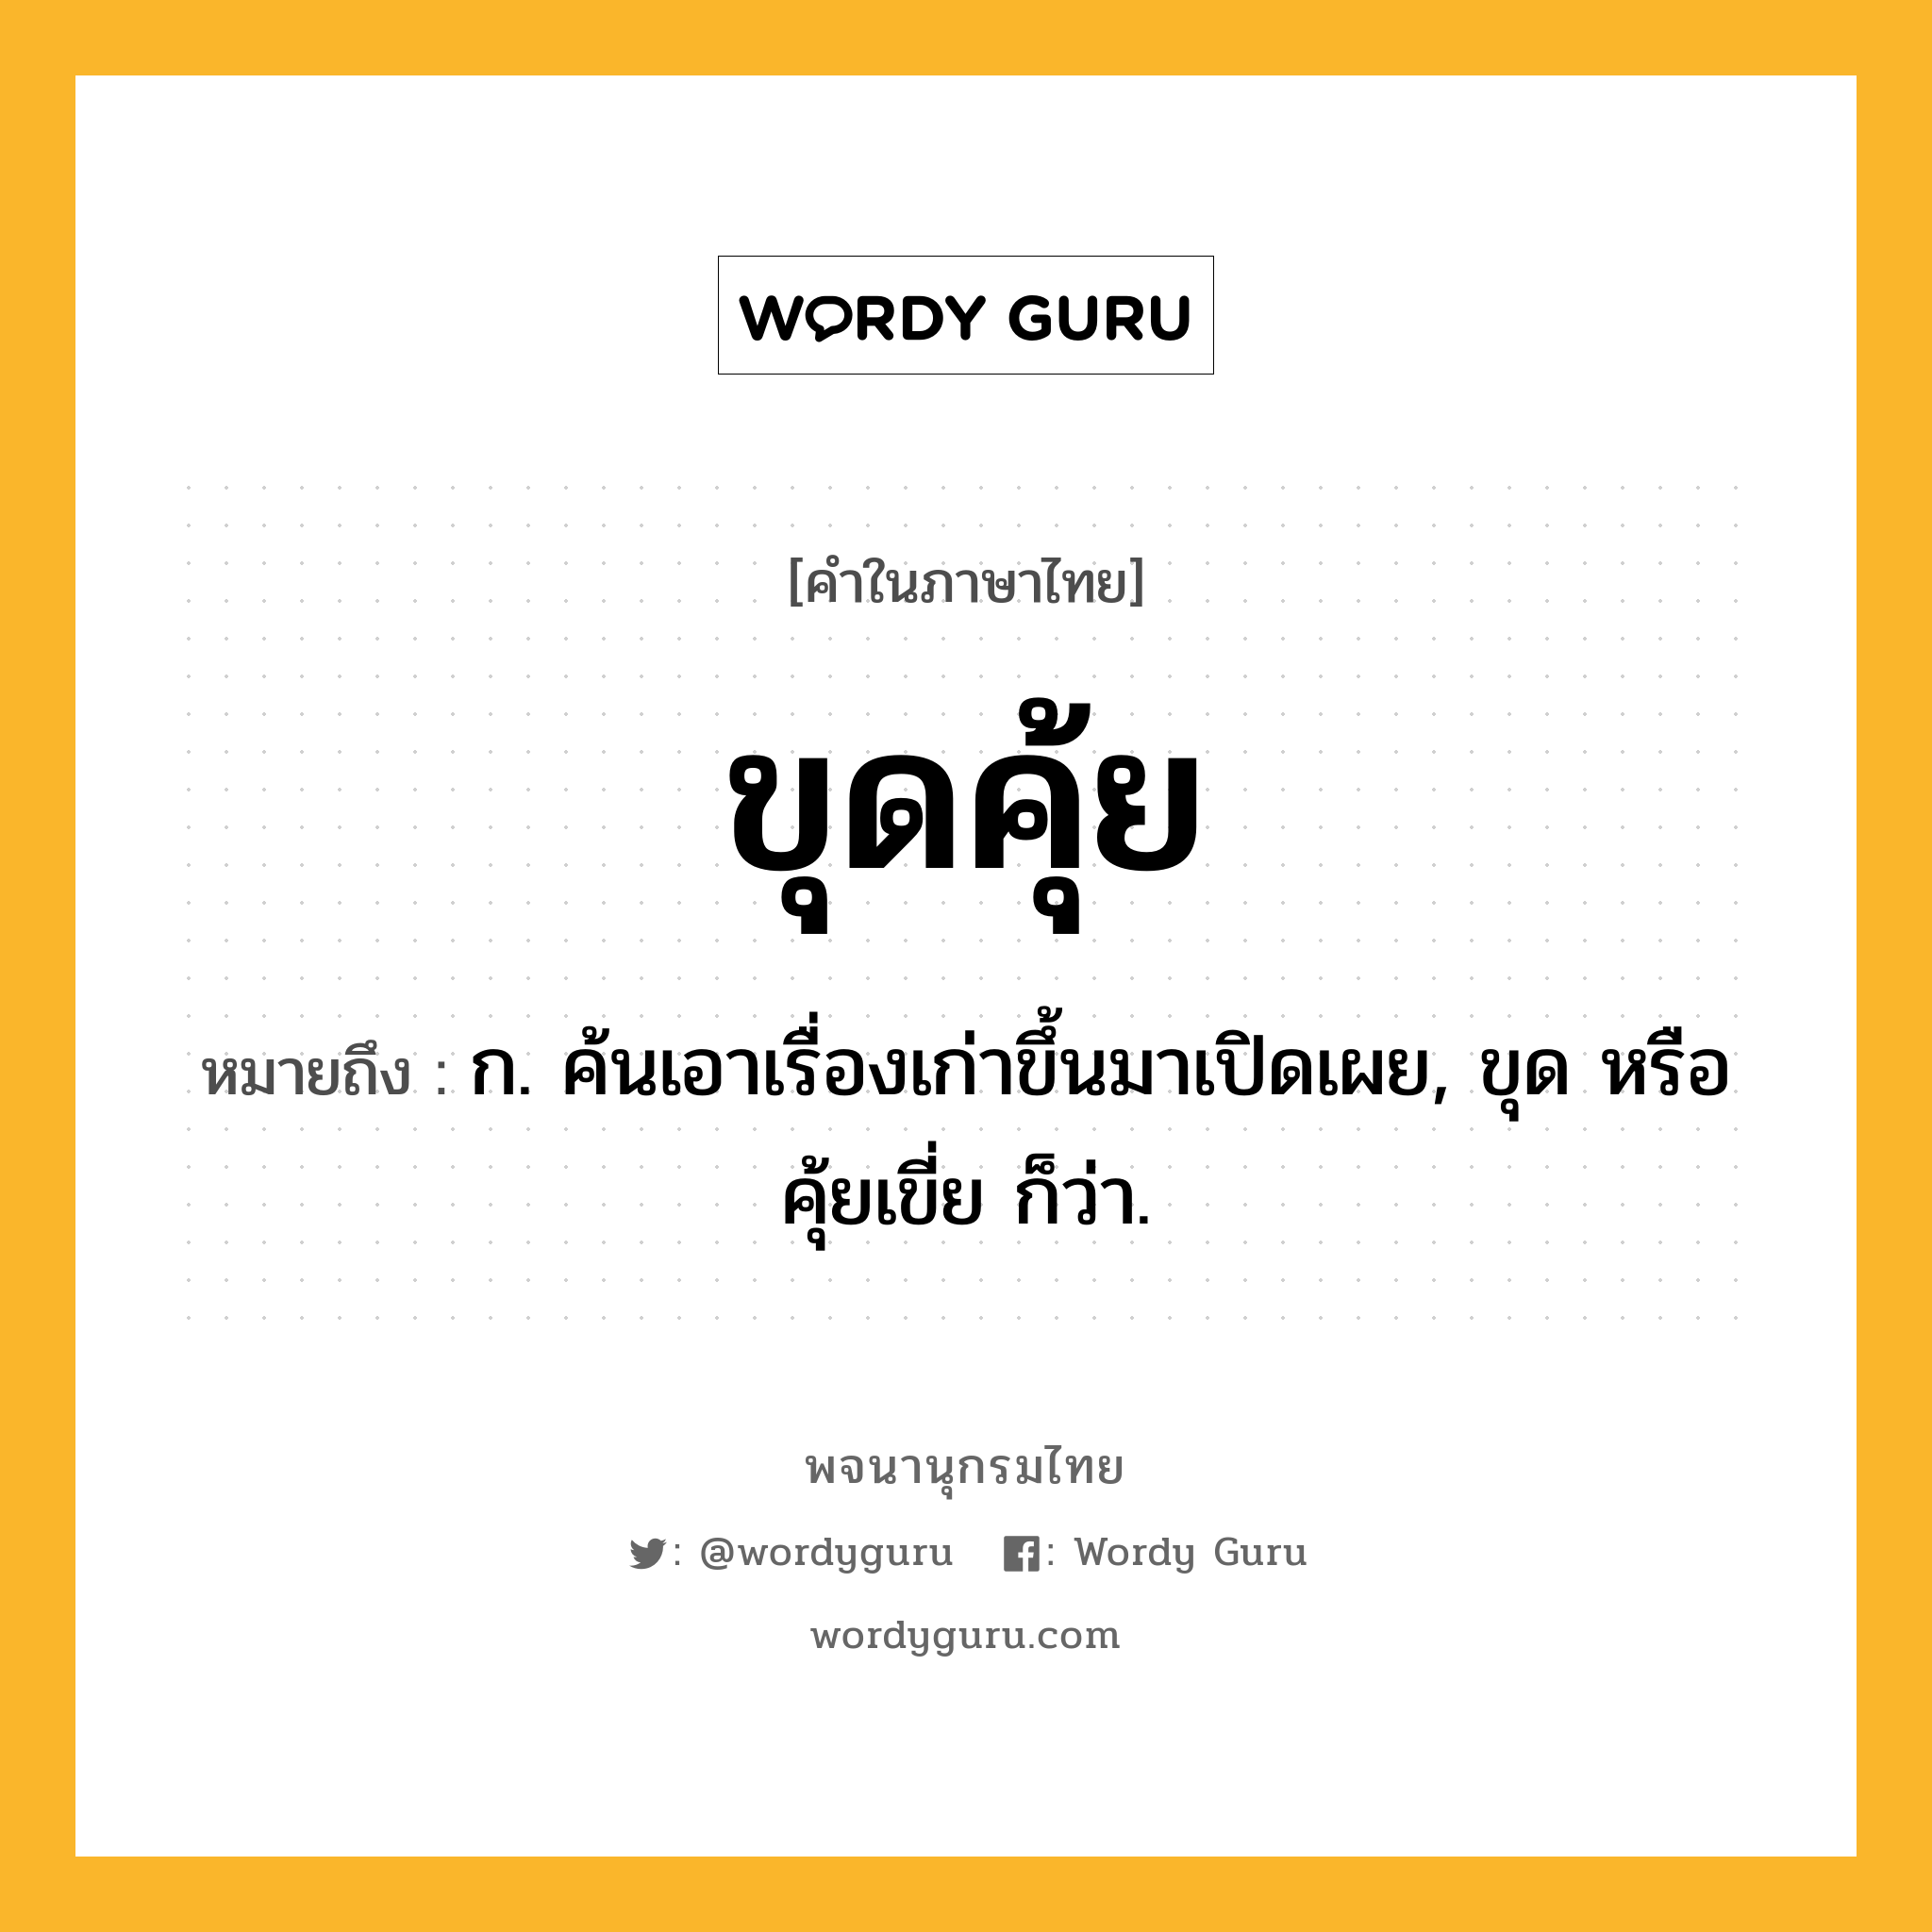 ขุดคุ้ย ความหมาย หมายถึงอะไร?, คำในภาษาไทย ขุดคุ้ย หมายถึง ก. ค้นเอาเรื่องเก่าขึ้นมาเปิดเผย, ขุด หรือ คุ้ยเขี่ย ก็ว่า.